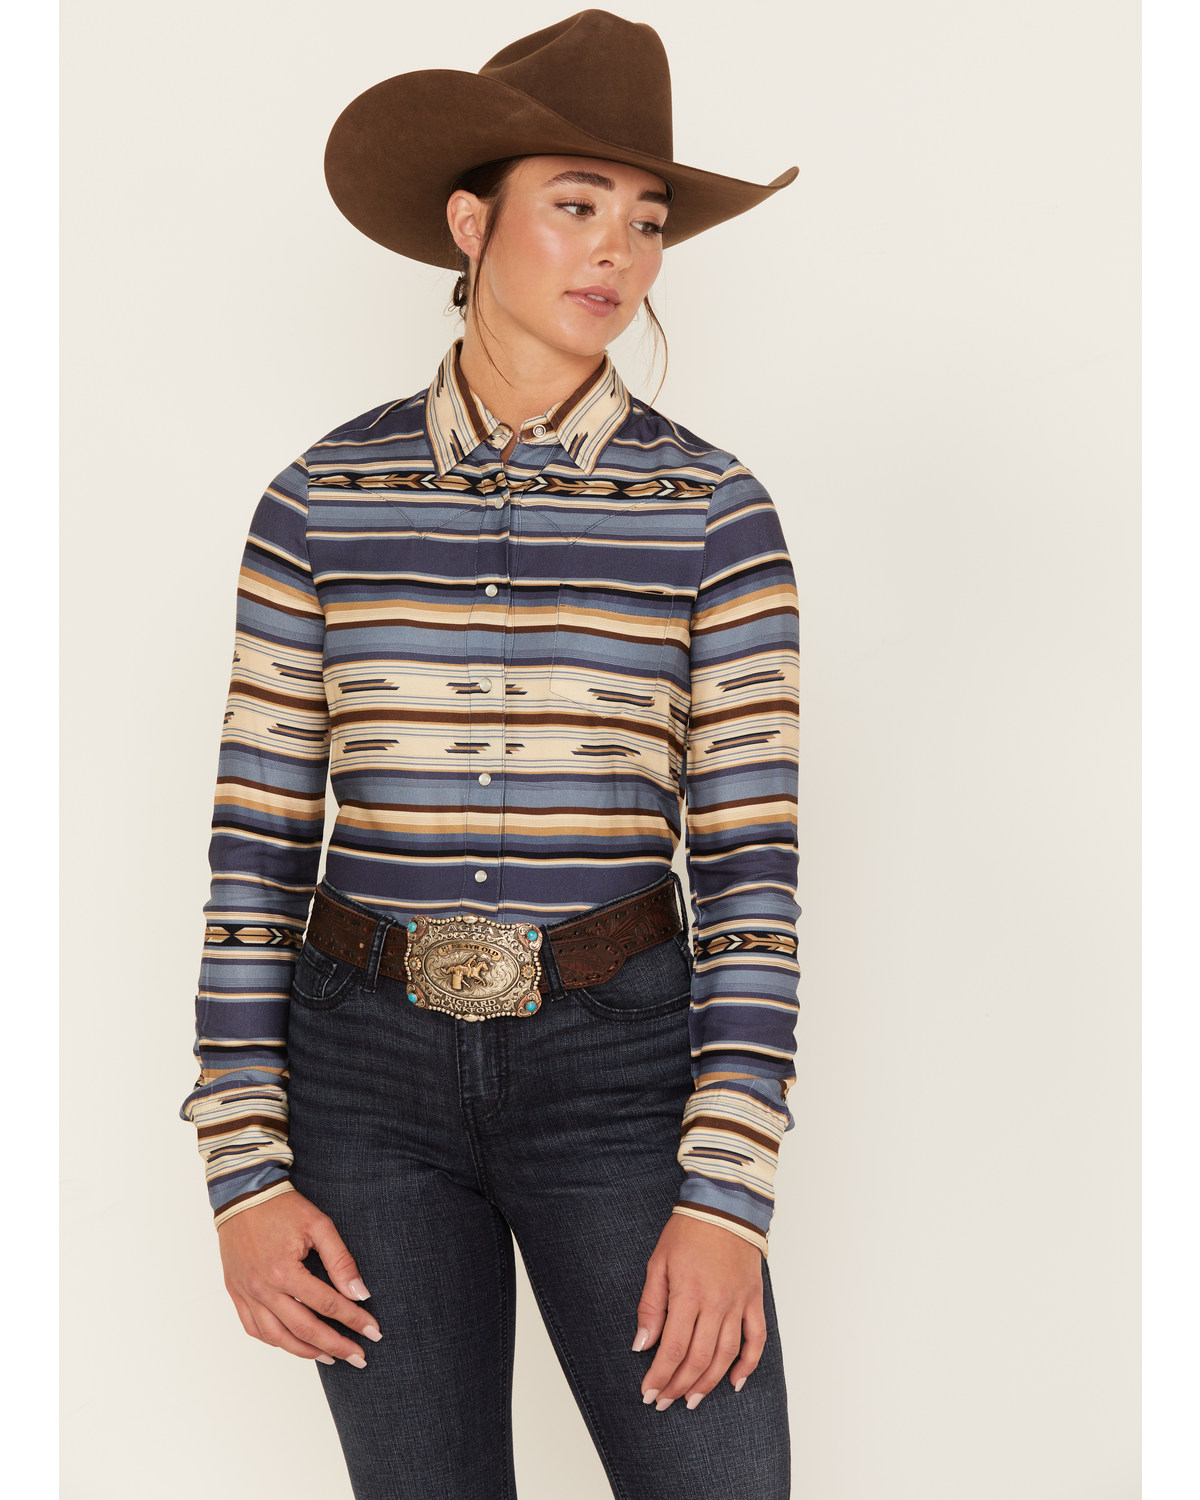 Stetson Women's Serape Stripe Long Sleeve Pearl Snap Western Shirt